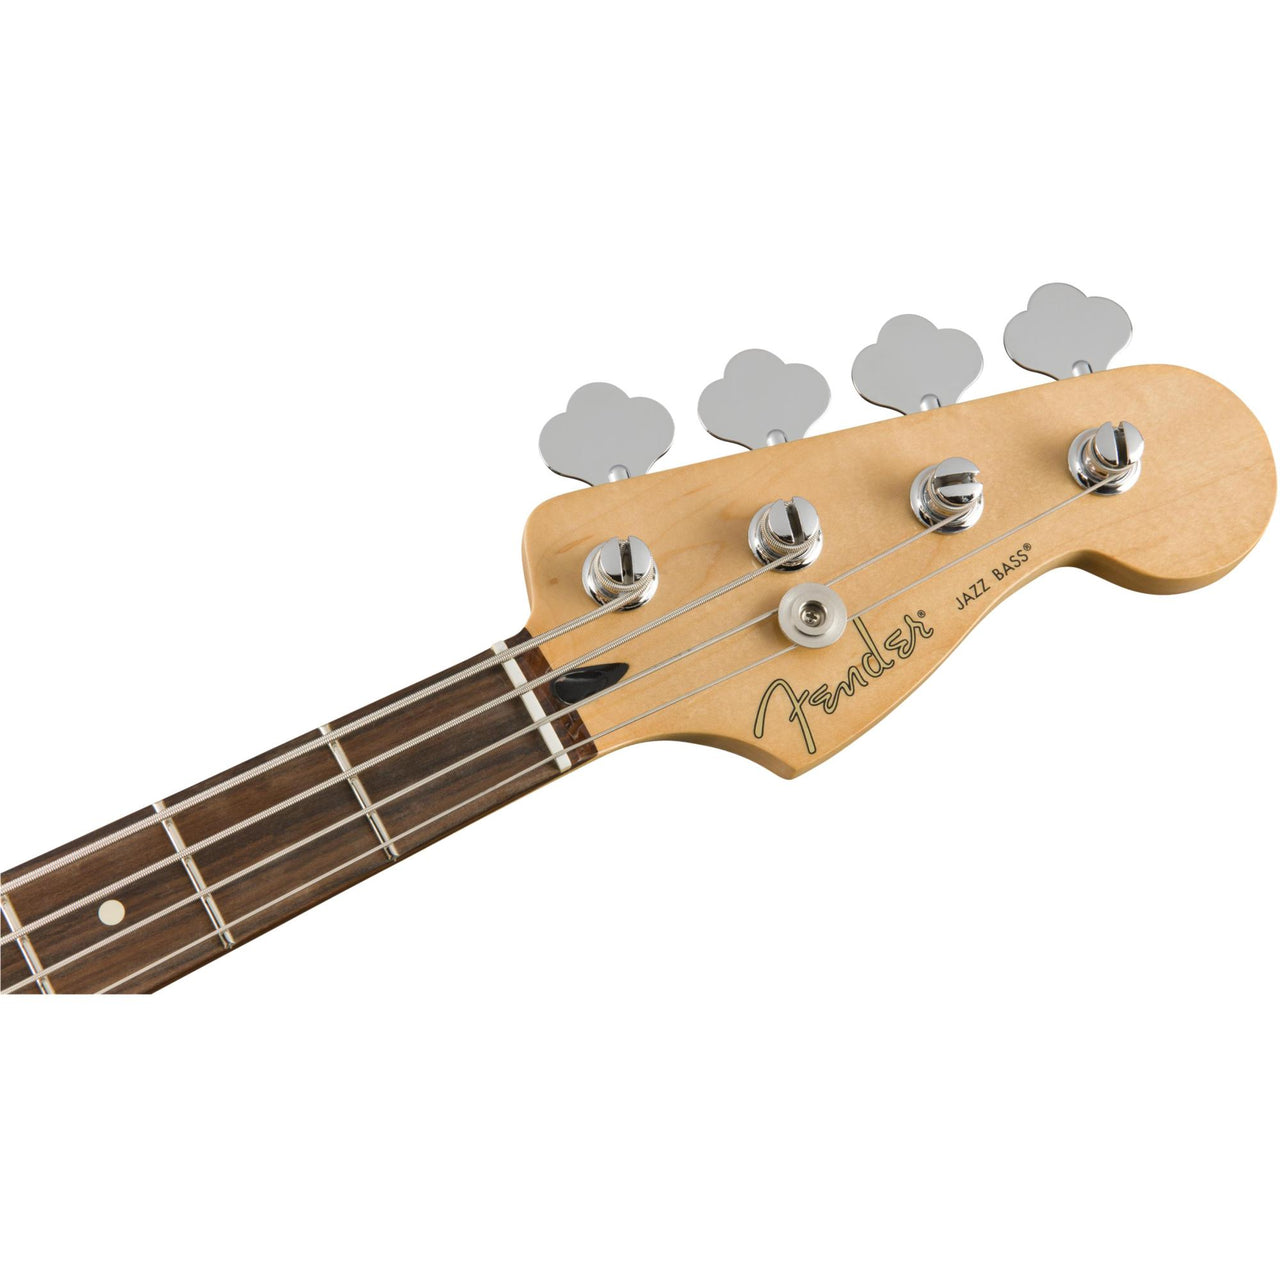 Bajo Electrico Fender Player Jazz Bass Mx Blanco Polar 0149903515